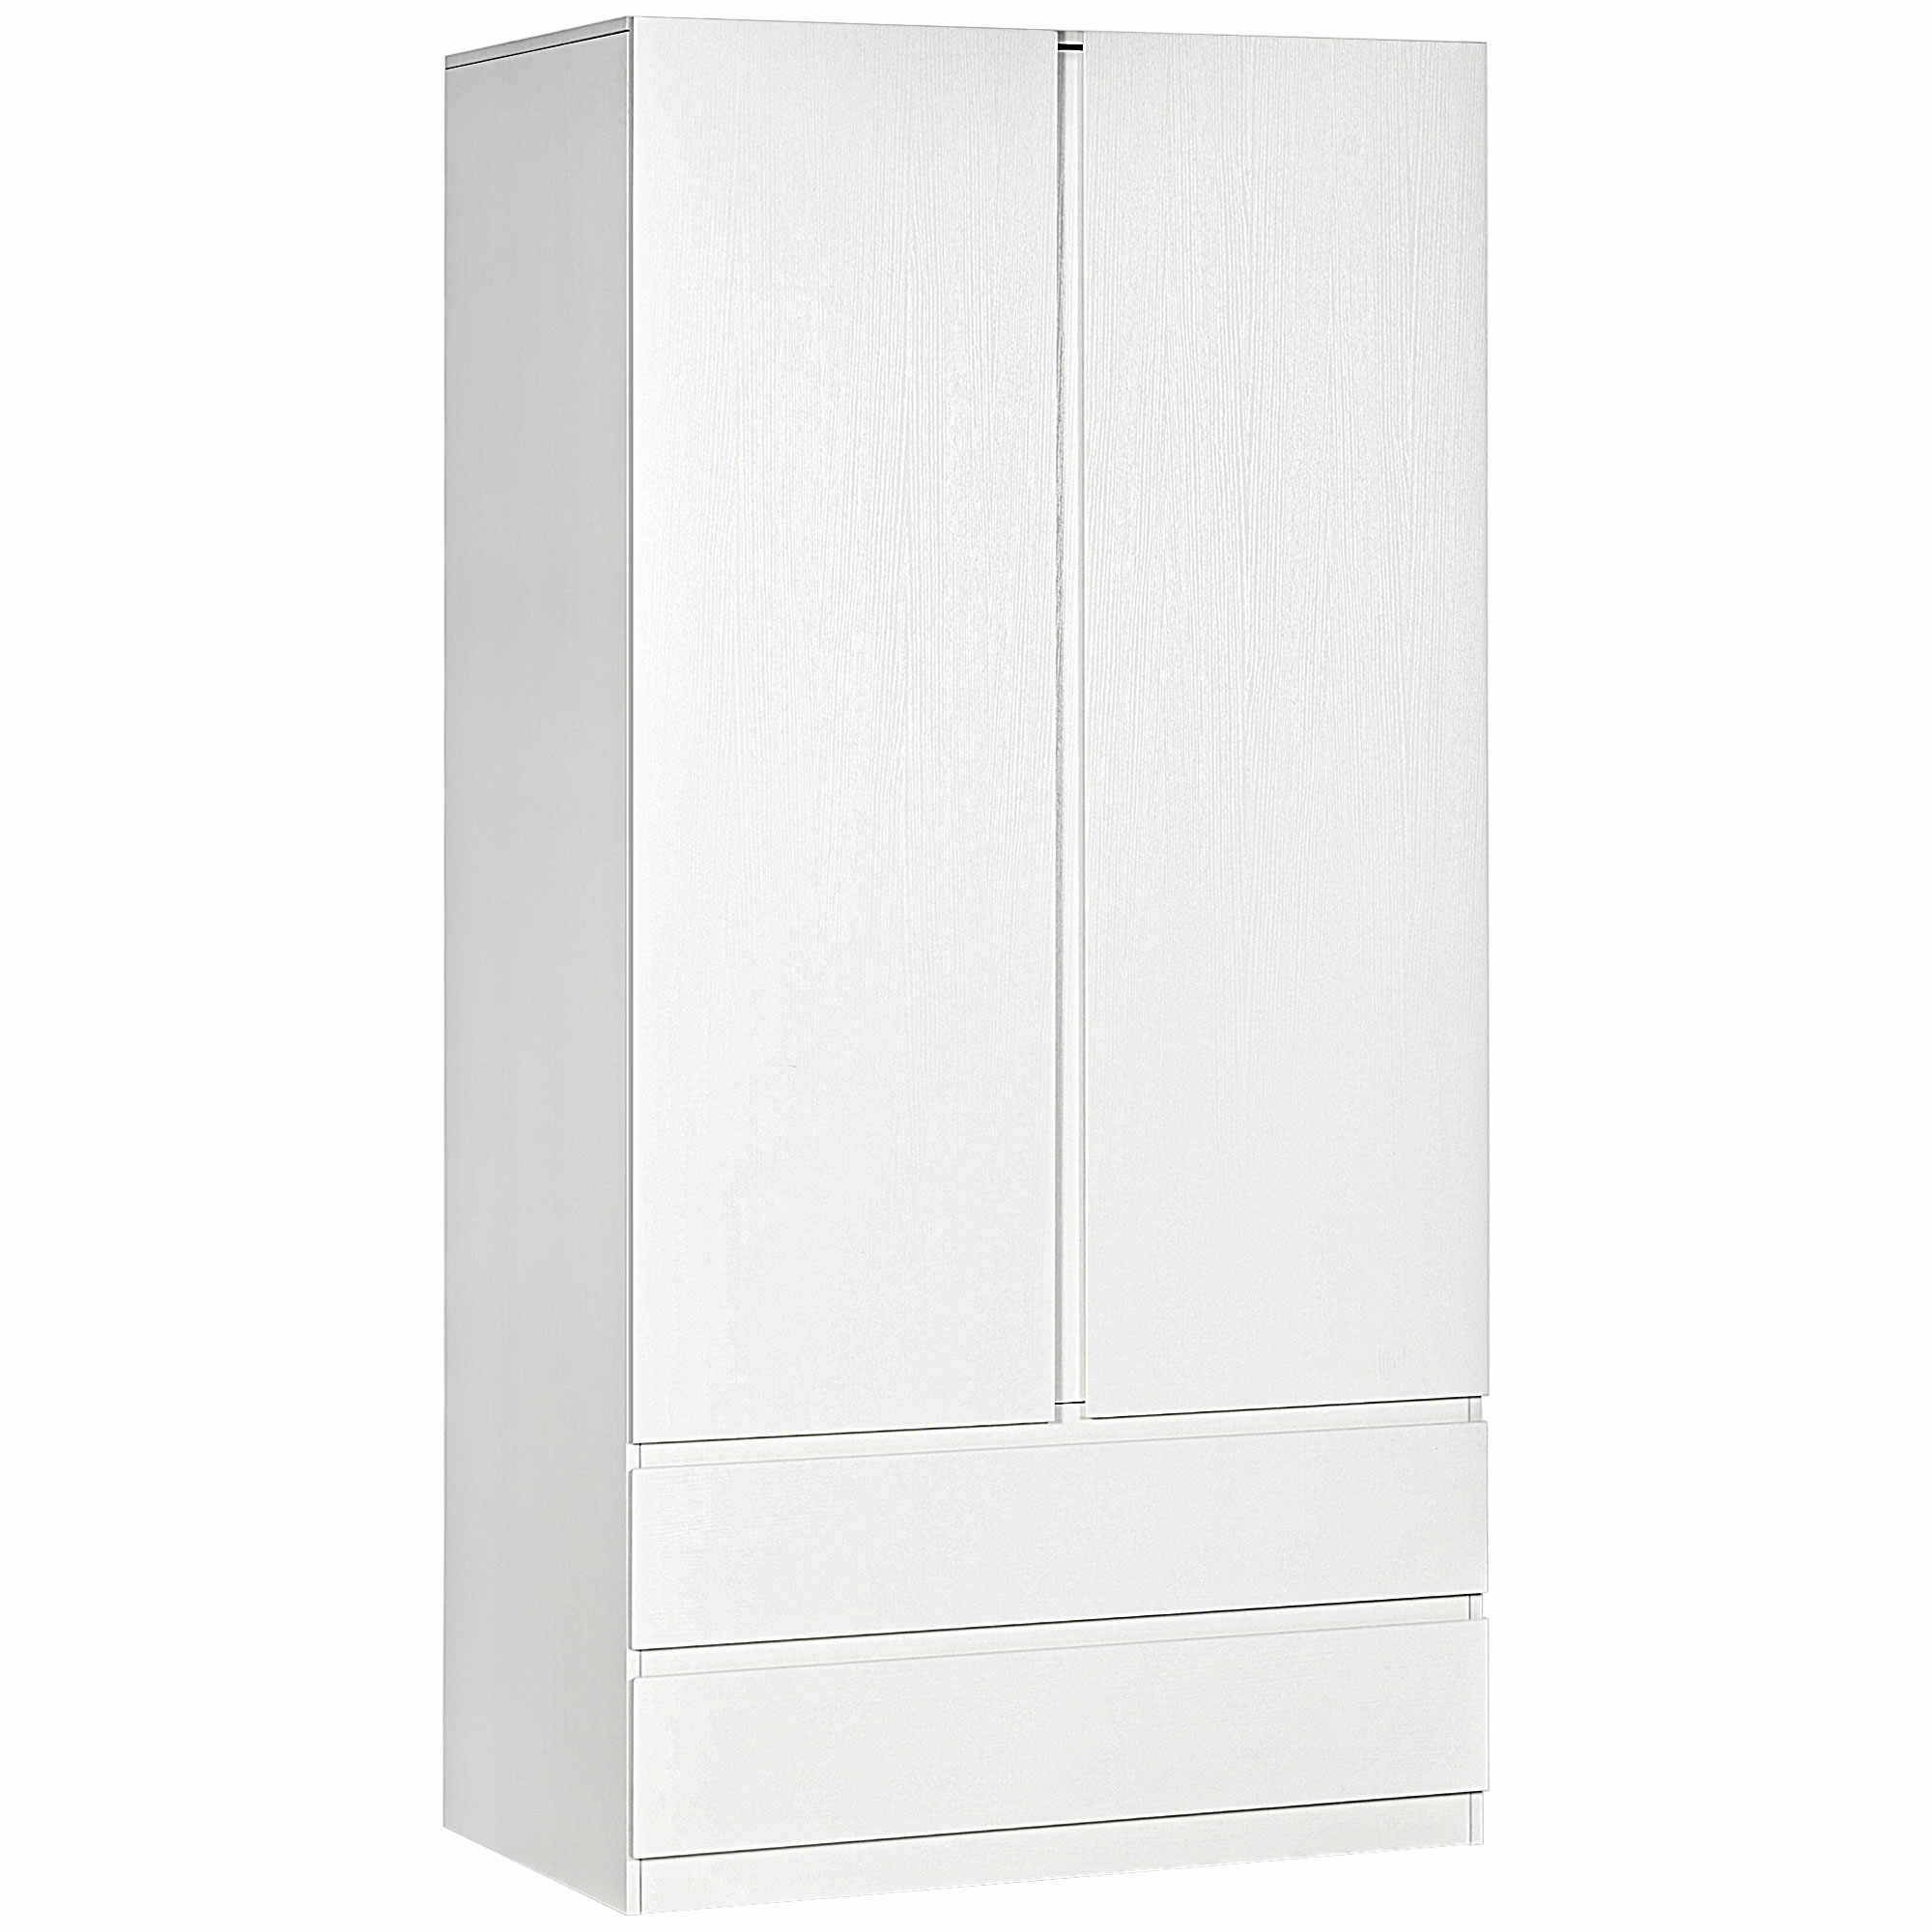 HOMCOM Dulap alb cu cuier pentru haine si 2 sertare glisante pentru dormitor din PAL, 100x60x200 cm